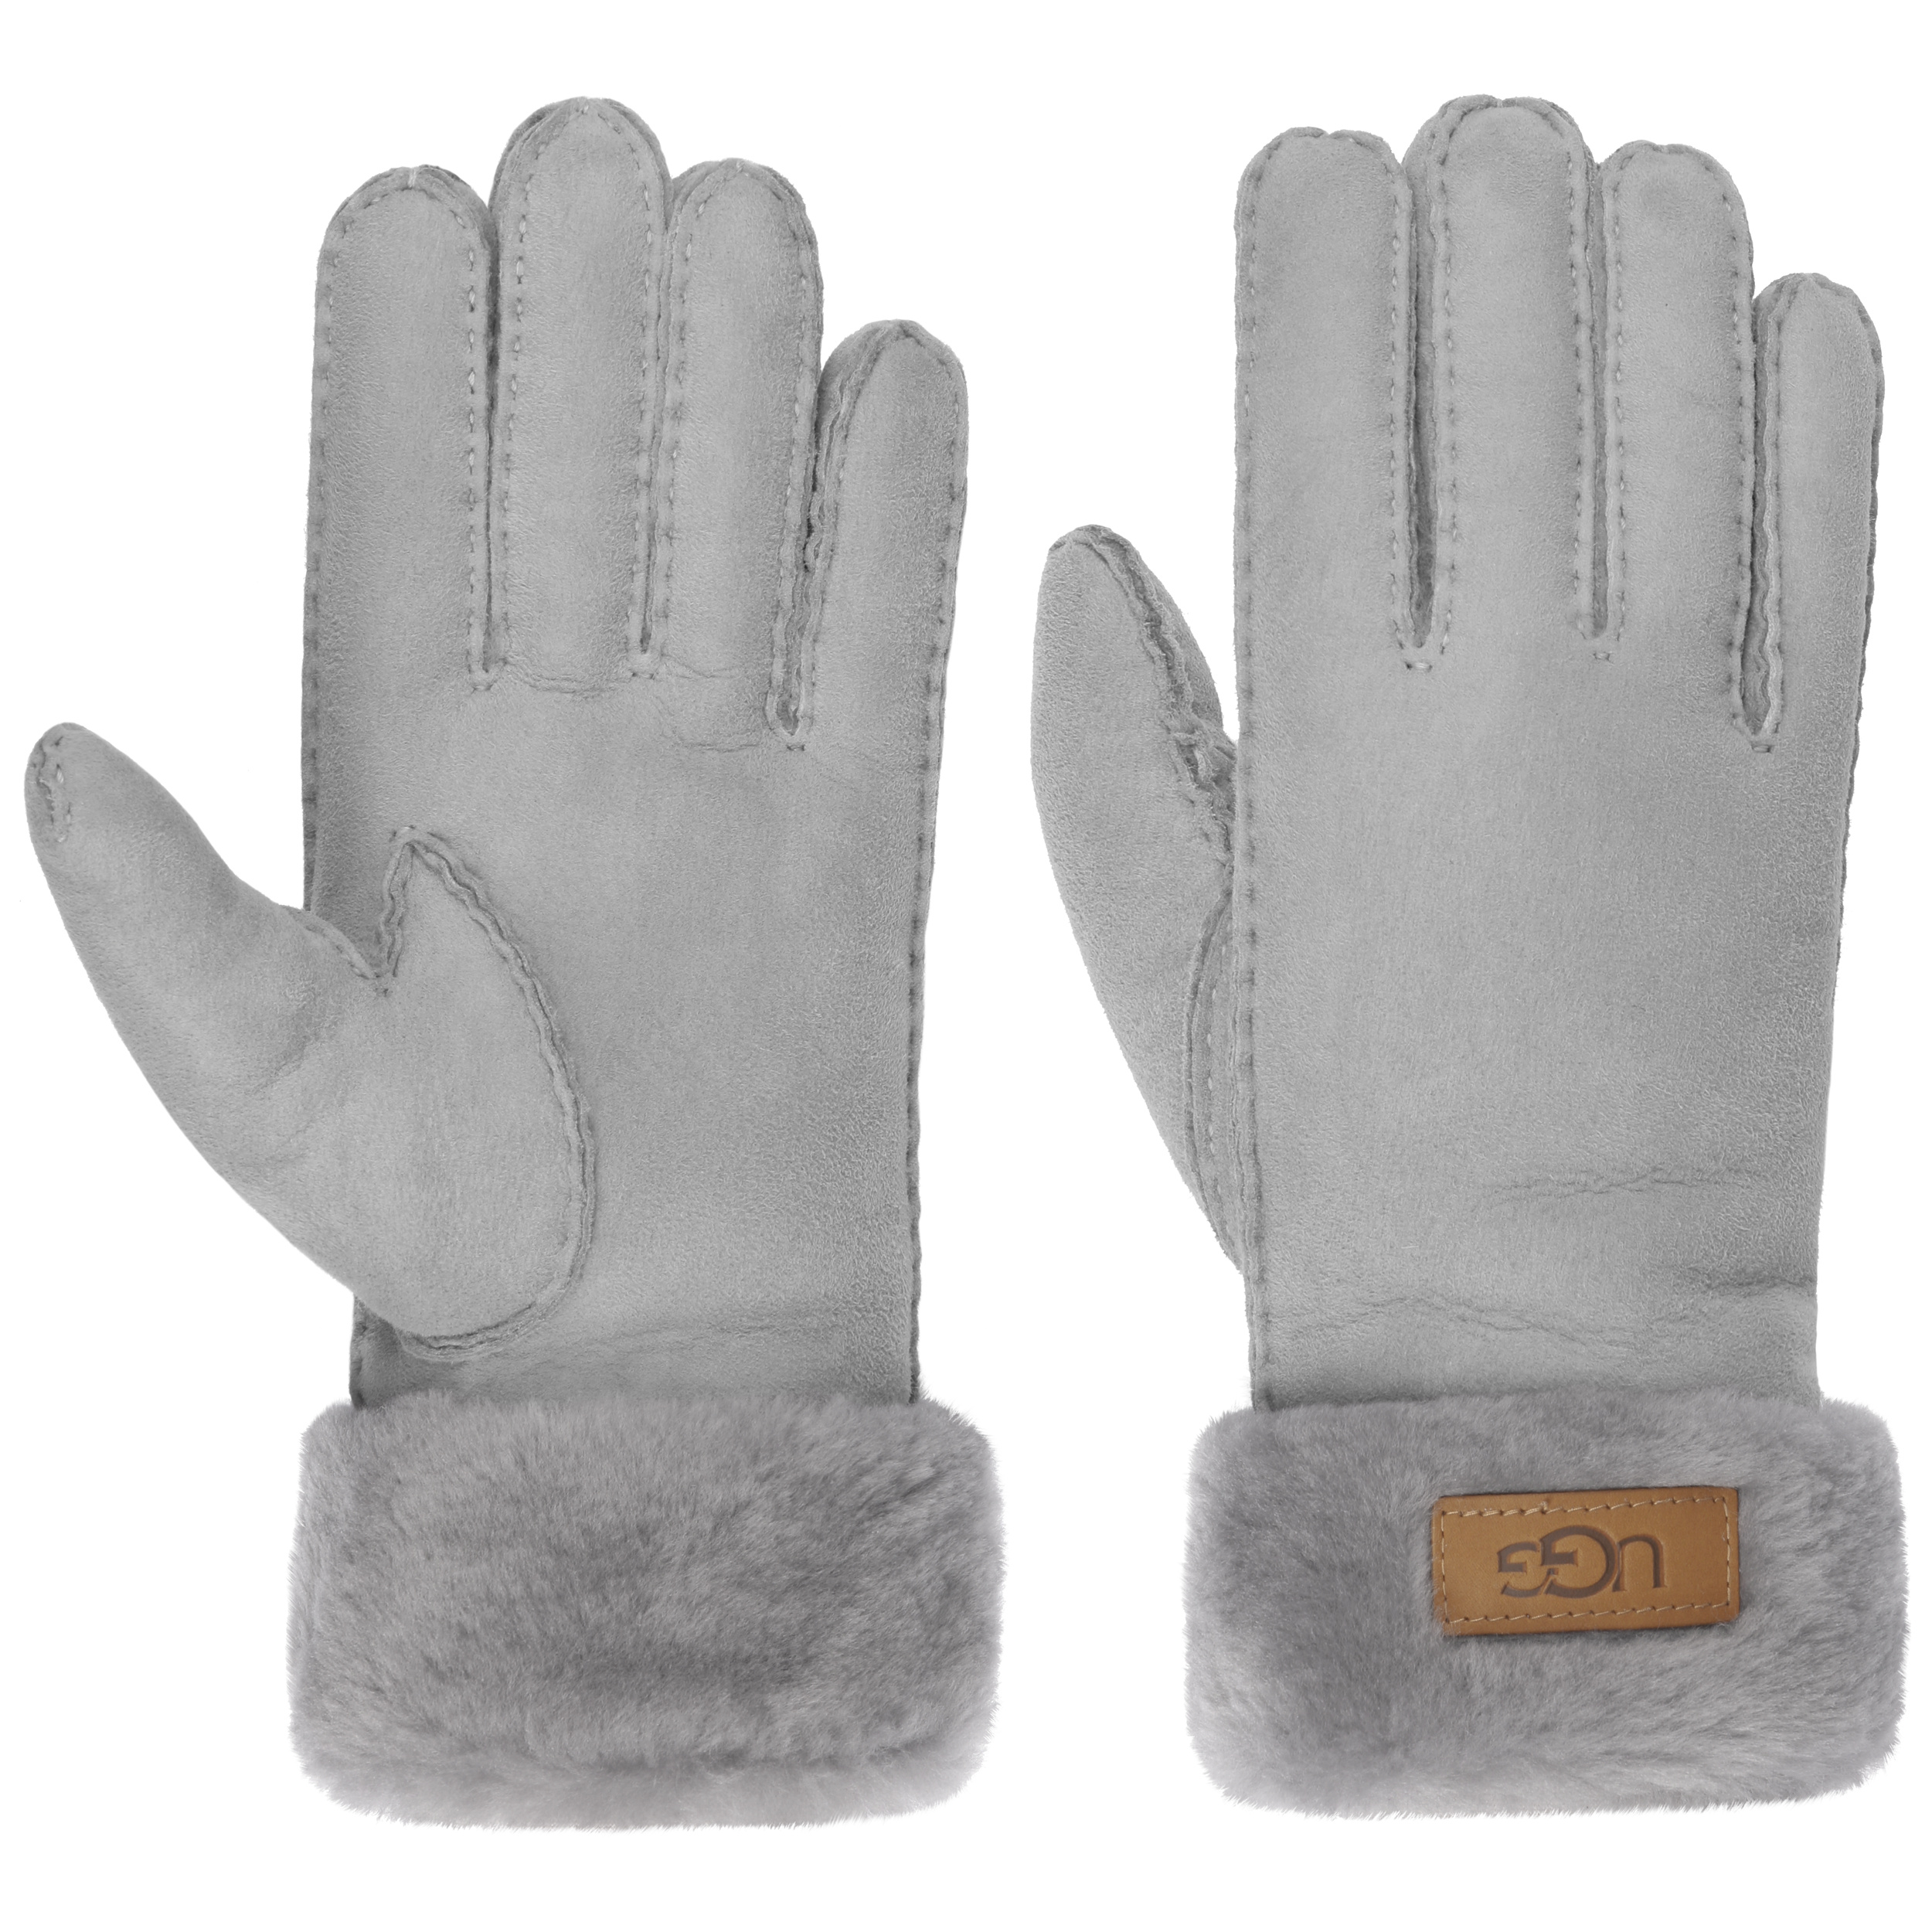 ego Beweging Respect Klassieke Dames Handschoenen by UGG - 149,95 €